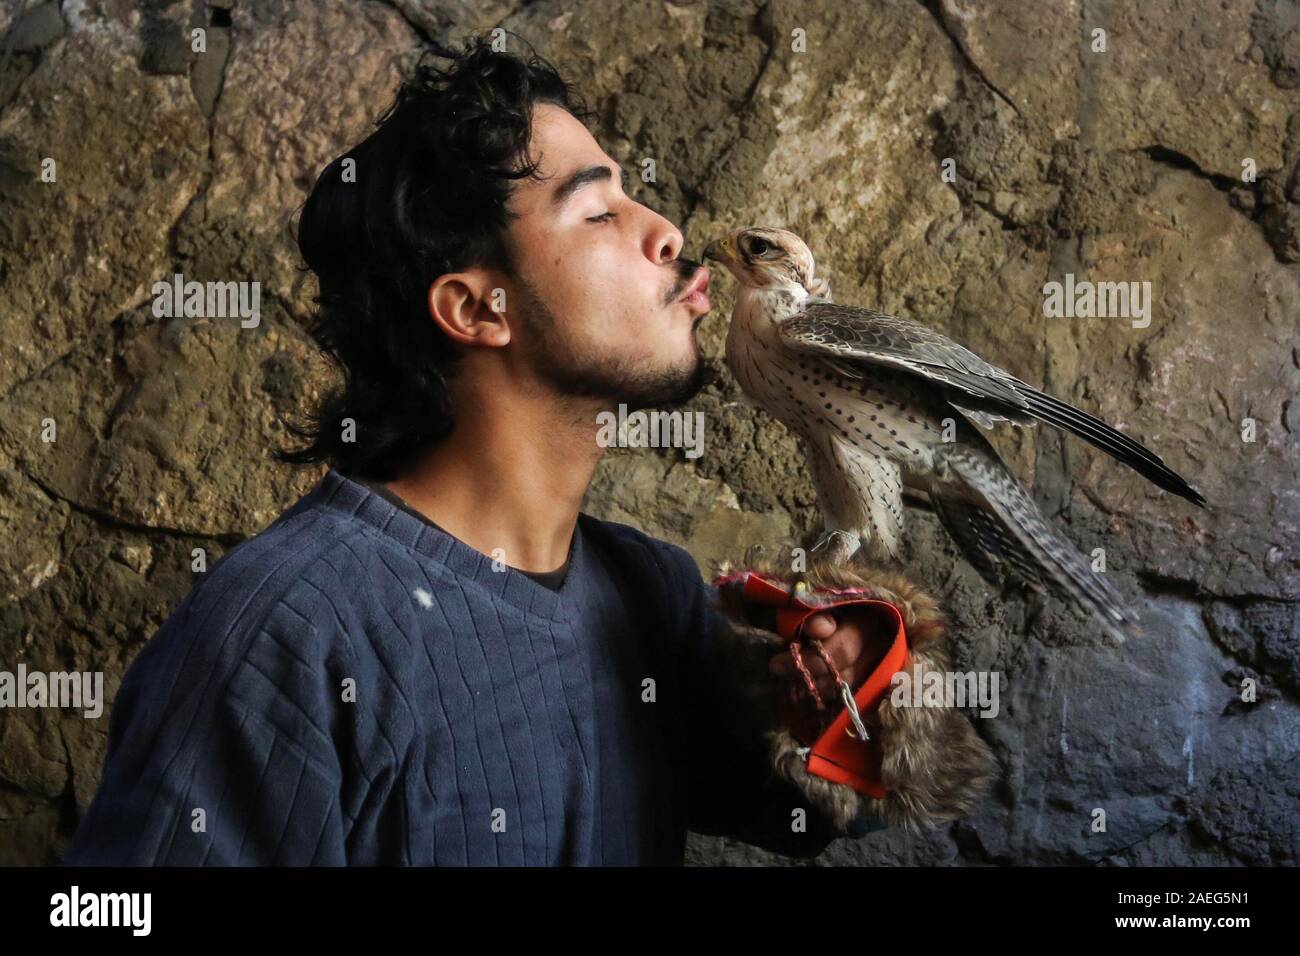 Nuseirat, Gazastreifen, palästinensischen Gebiet. 9 Dez, 2019. Eine palästinensische Jugend Fadel Nabhein posiert für ein Foto mit einem Adler in seinem Haus in der nuseirat regugee Camp im zentralen Gazastreifen, der am 9. Dezember 2019. Nabhein Rassen und zähmt Falken und Schlangen in seinem Haus und sogar in mummifying einige Tiere, nachdem sie starben wegen Wetter oder Krankheit Kredit: Ashraf Amra/APA-Images/ZUMA Draht/Alamy Leben Nachrichten gelungen Stockfoto